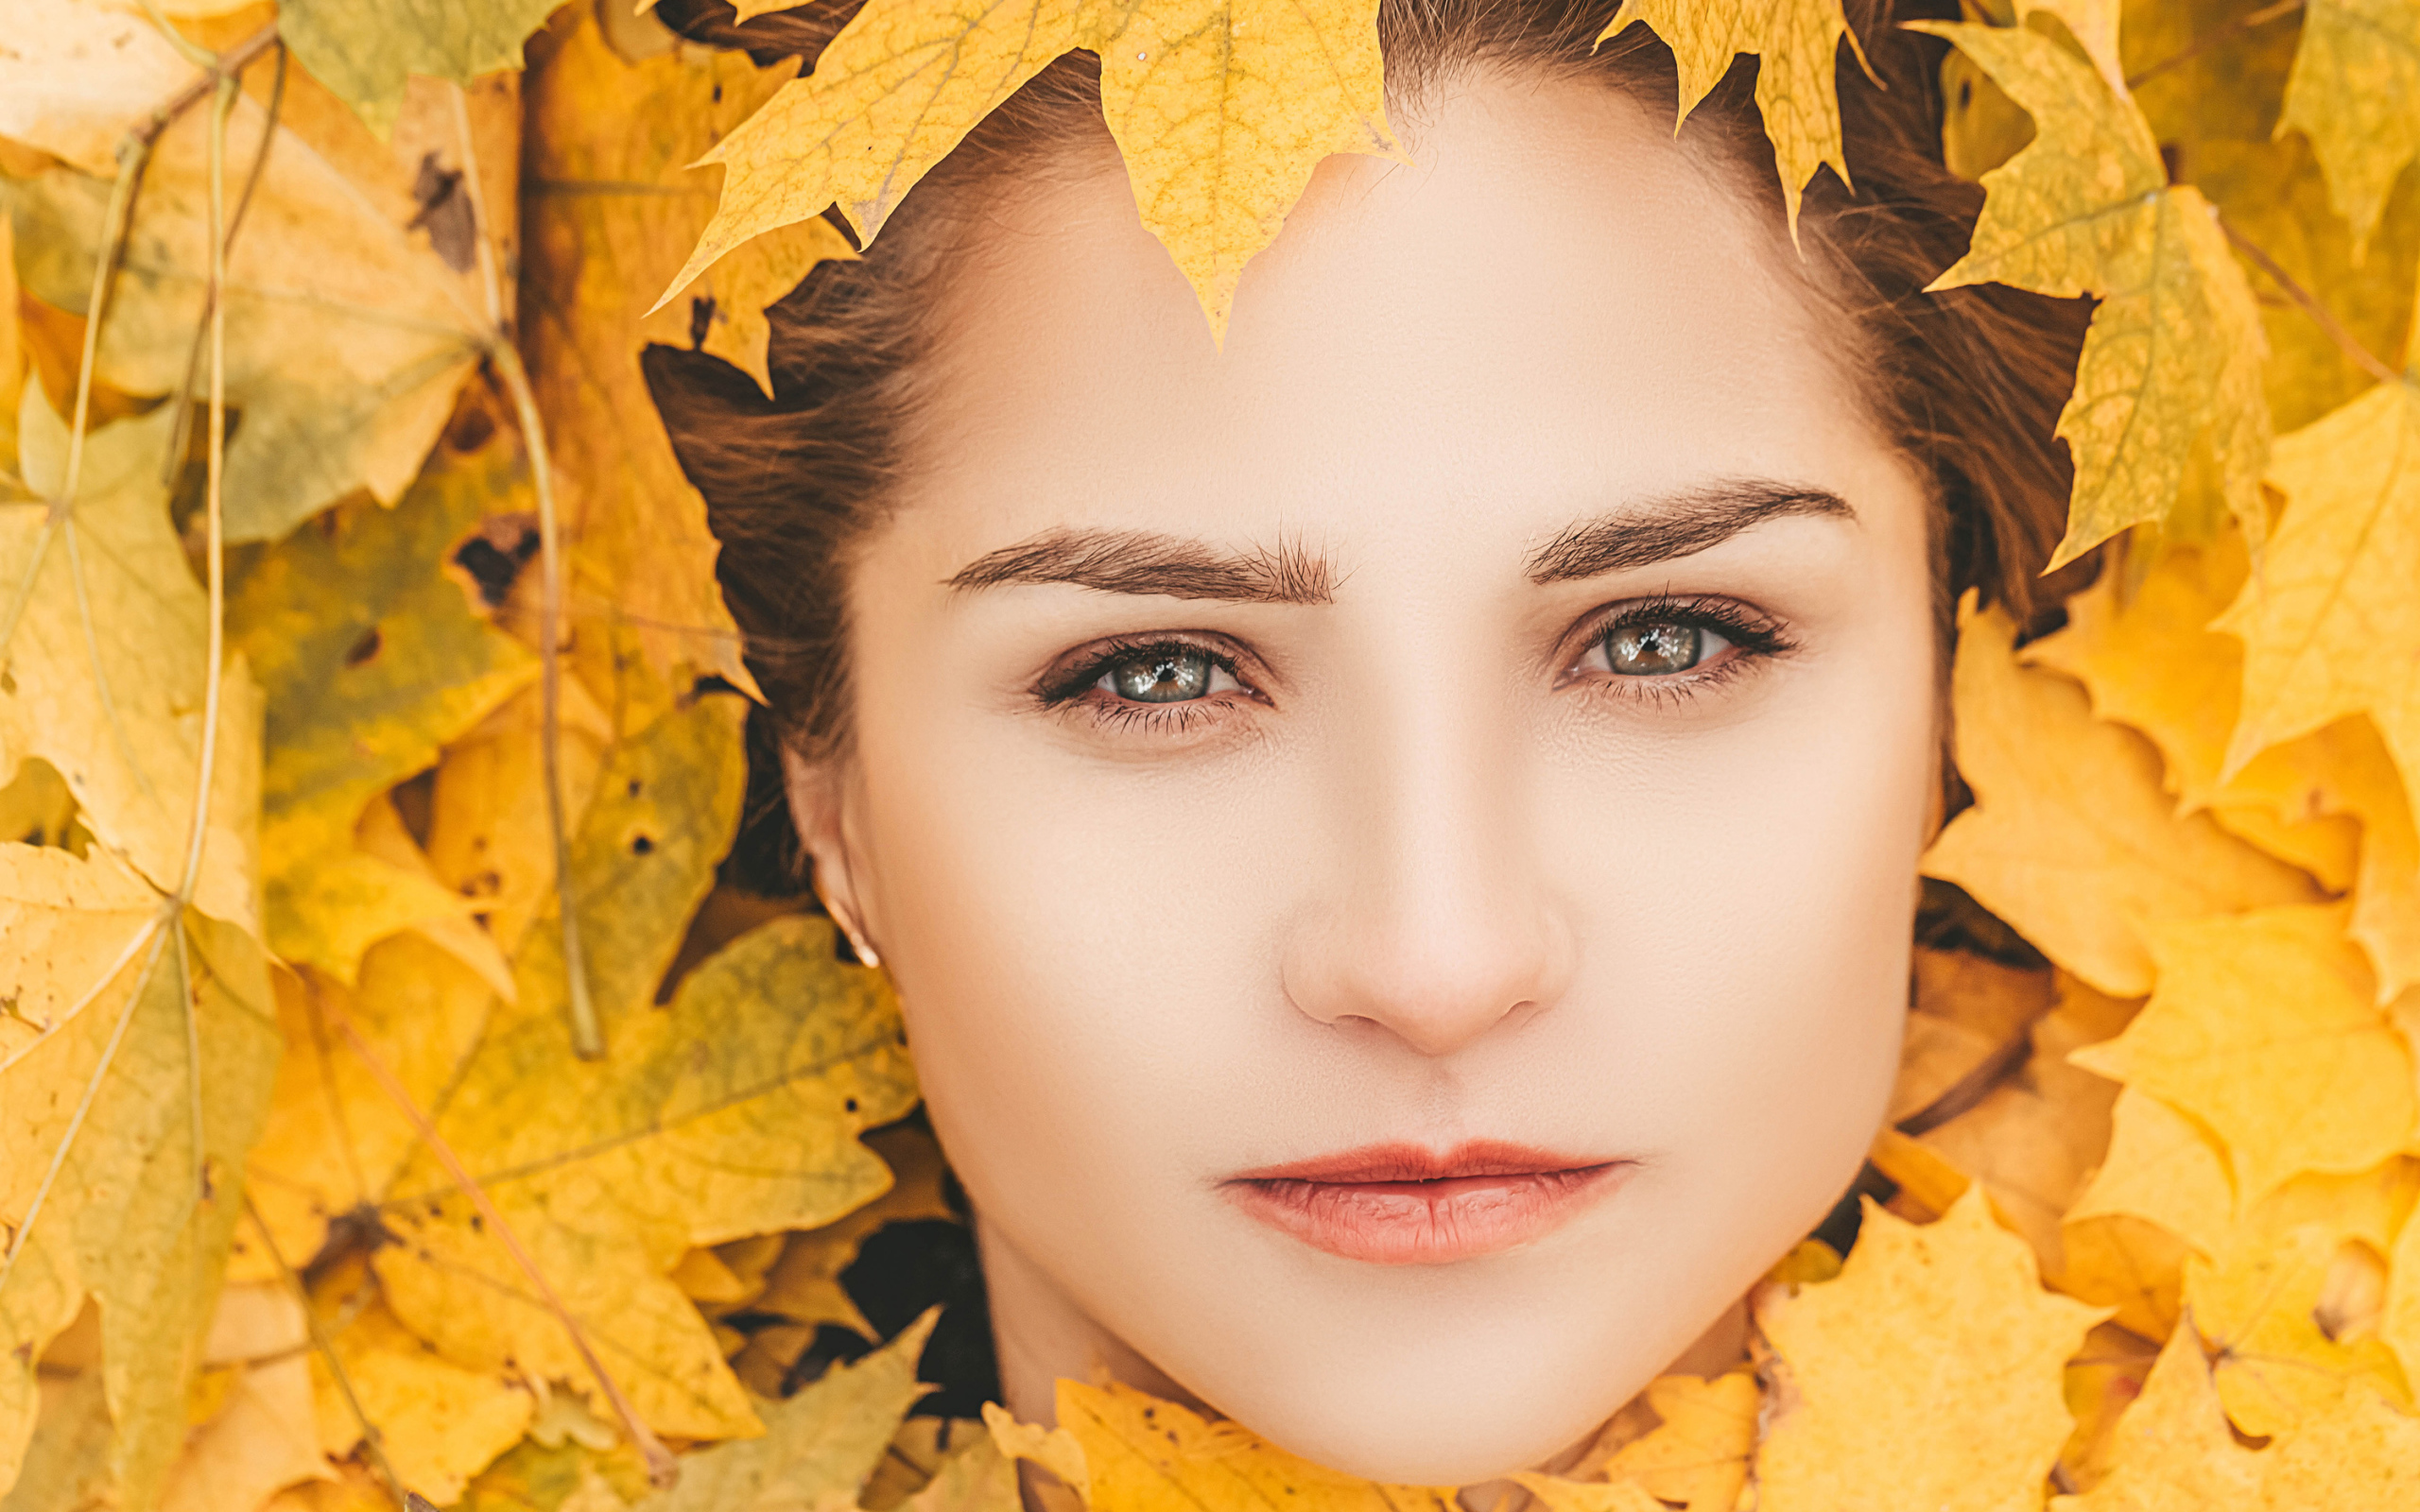 Лицо красивой молодой девушки в желтой листве